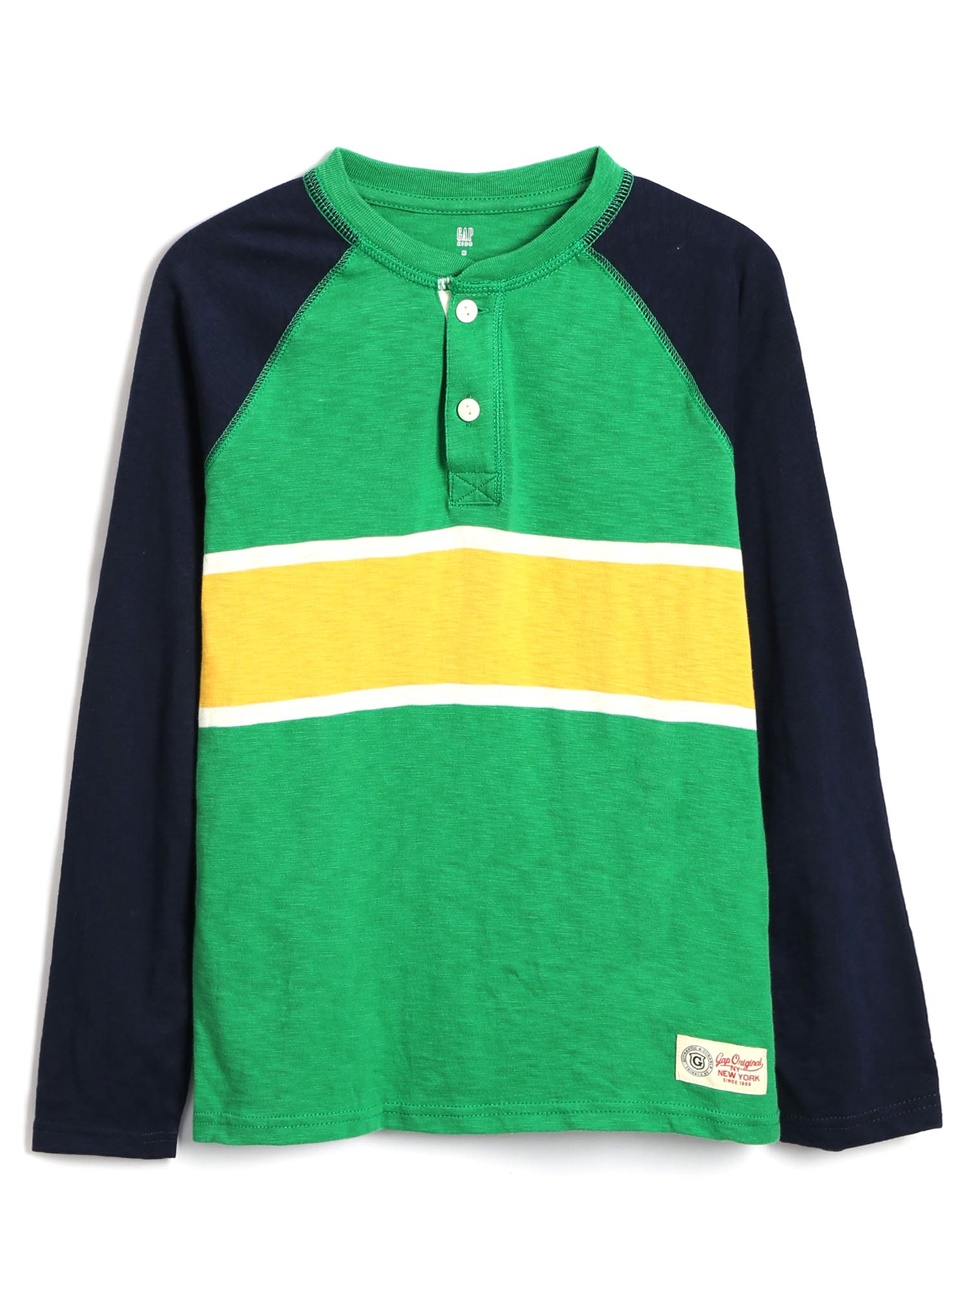 男童裝|舒適胸前條紋亨利式長袖T恤-翠綠